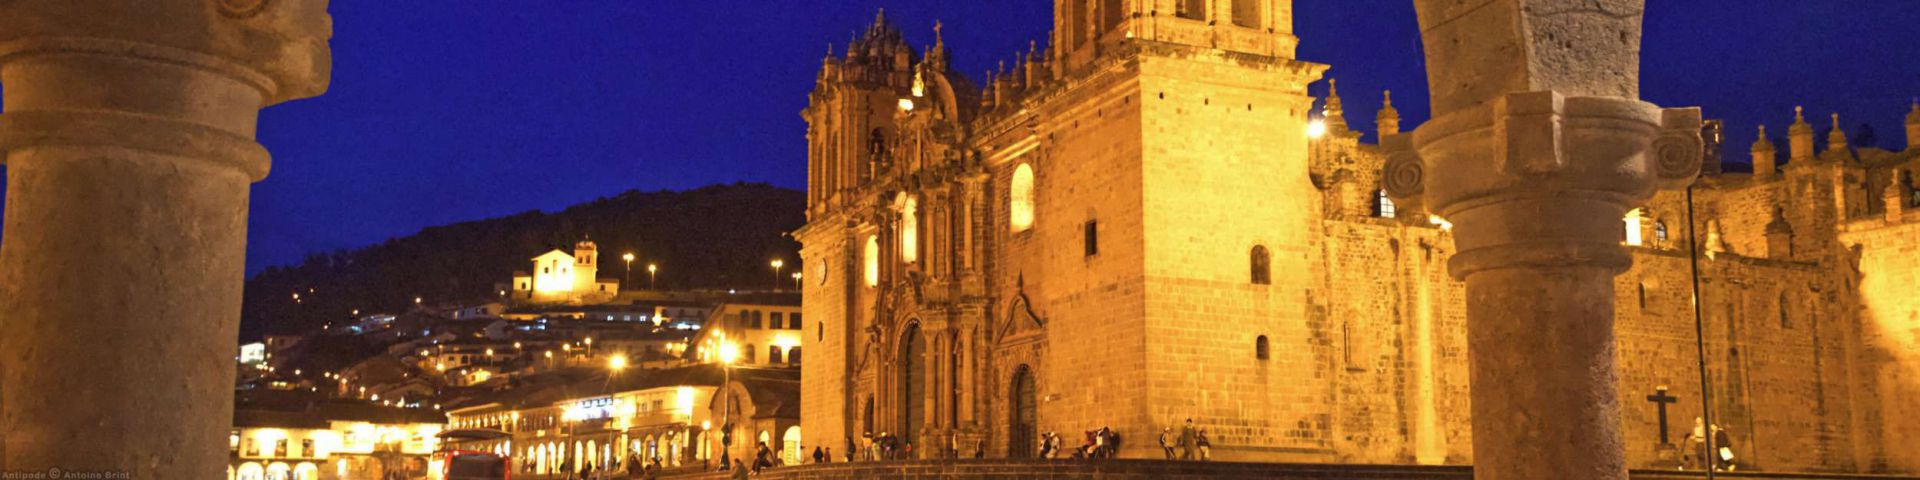 Place d'armes | Cuzco